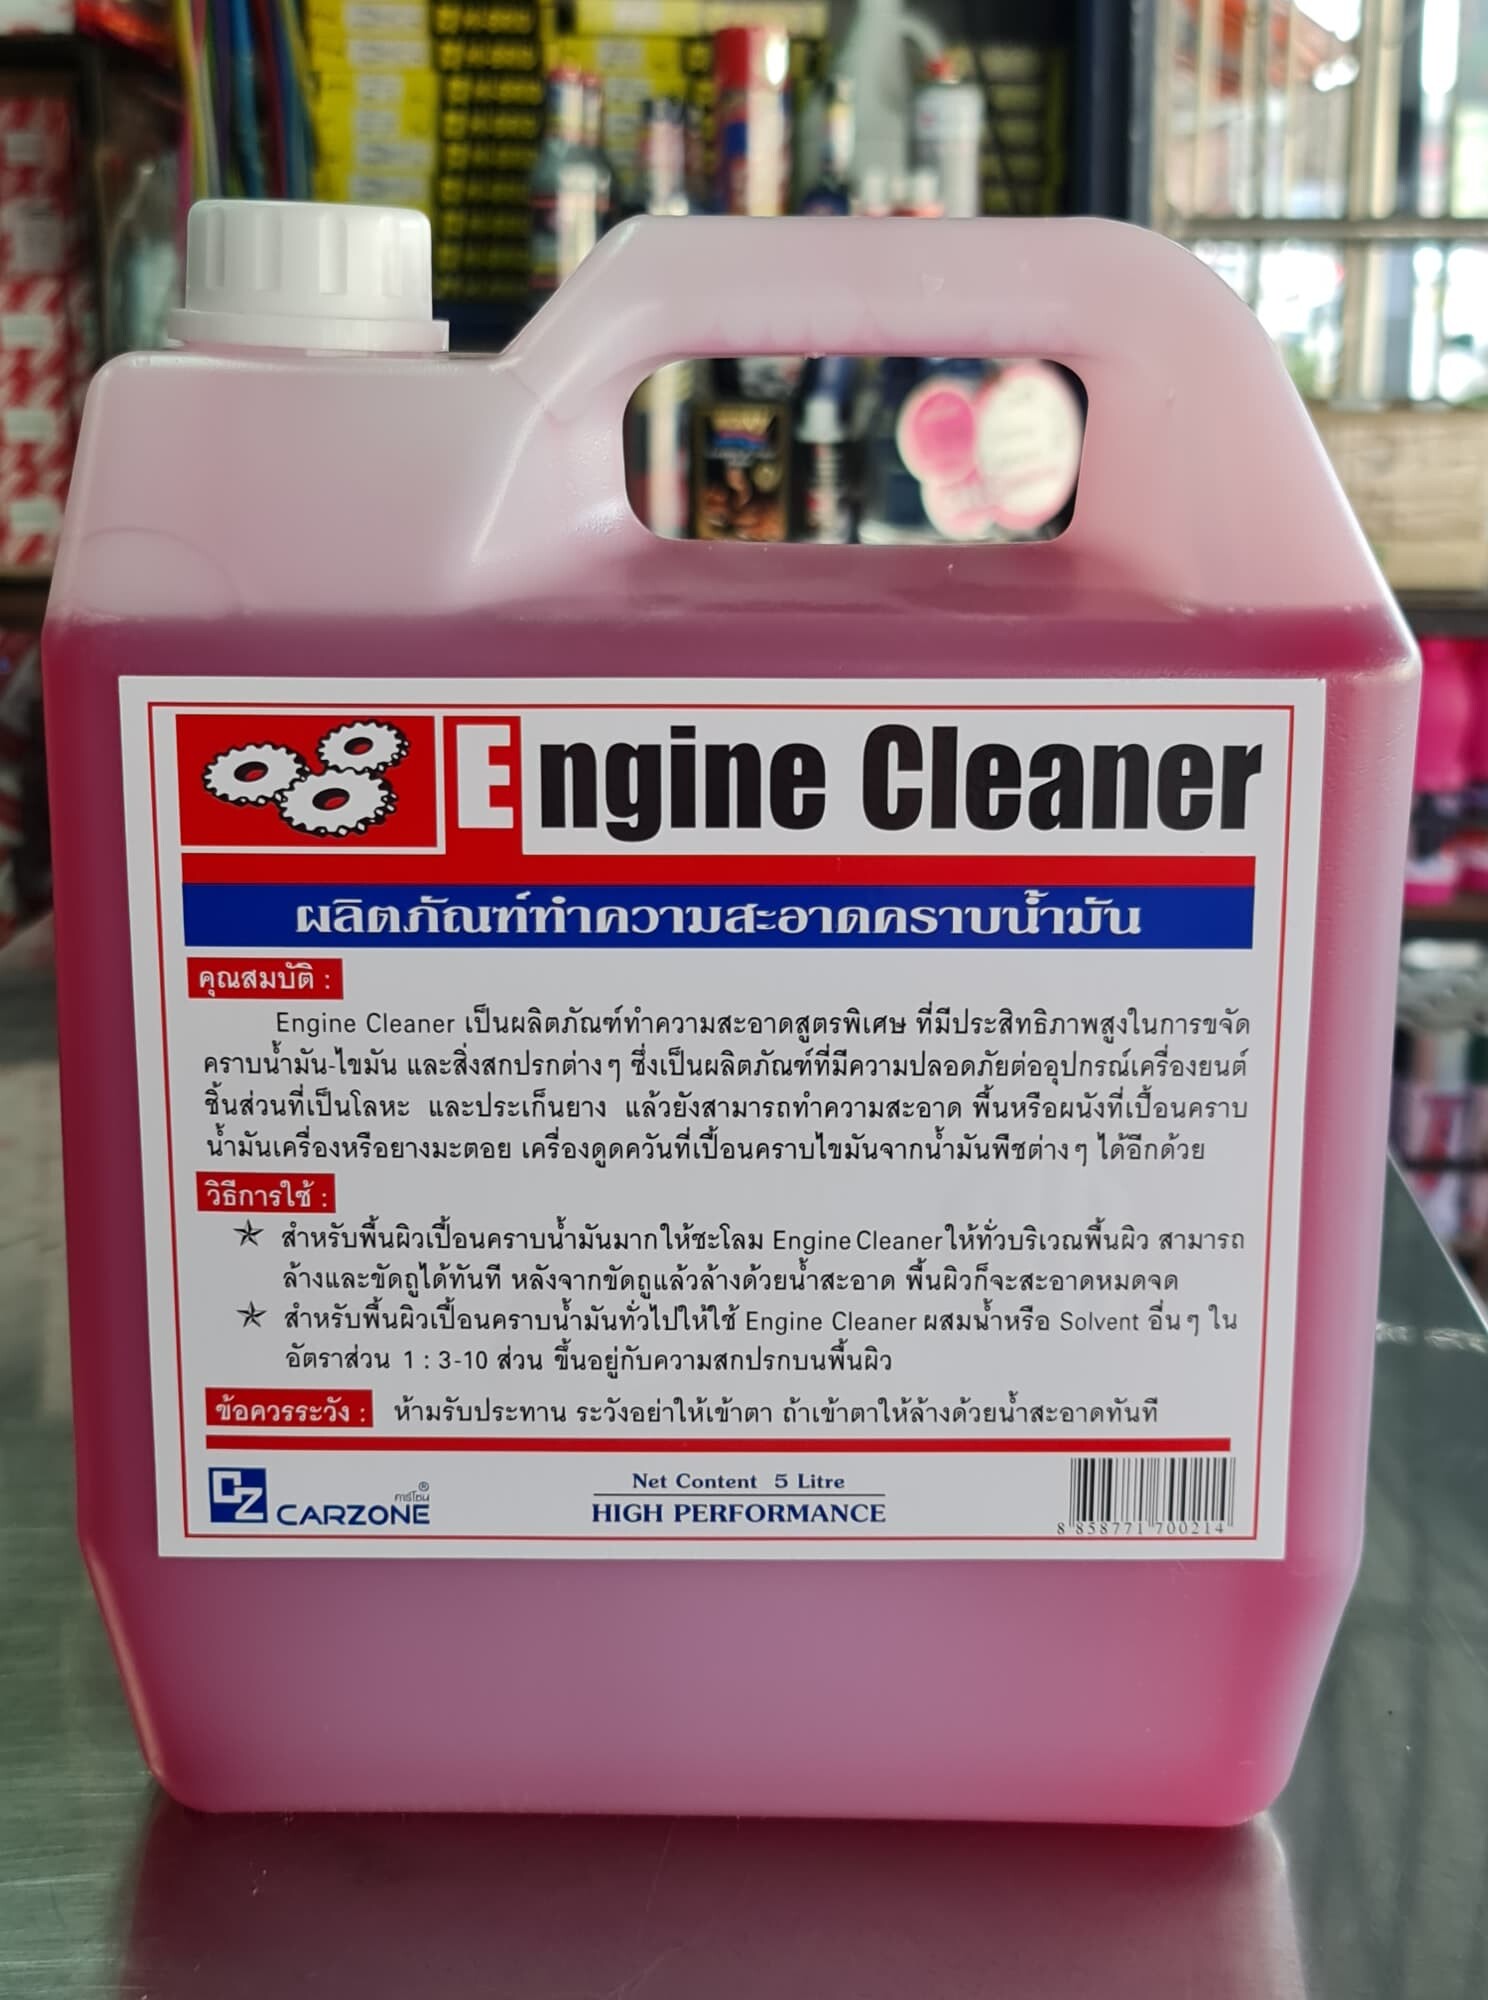 น้ำยาล้างเครื่องภายนอกสีแดงทำความสะอาด *สูตรเชียงกง* พิเศษยี่ห้อ Engine Cleaner 5ลิตรน้ำยาล้างเครื่องภายนอกล้างคราบน้ำมันจารบีสิ่งสกปรก